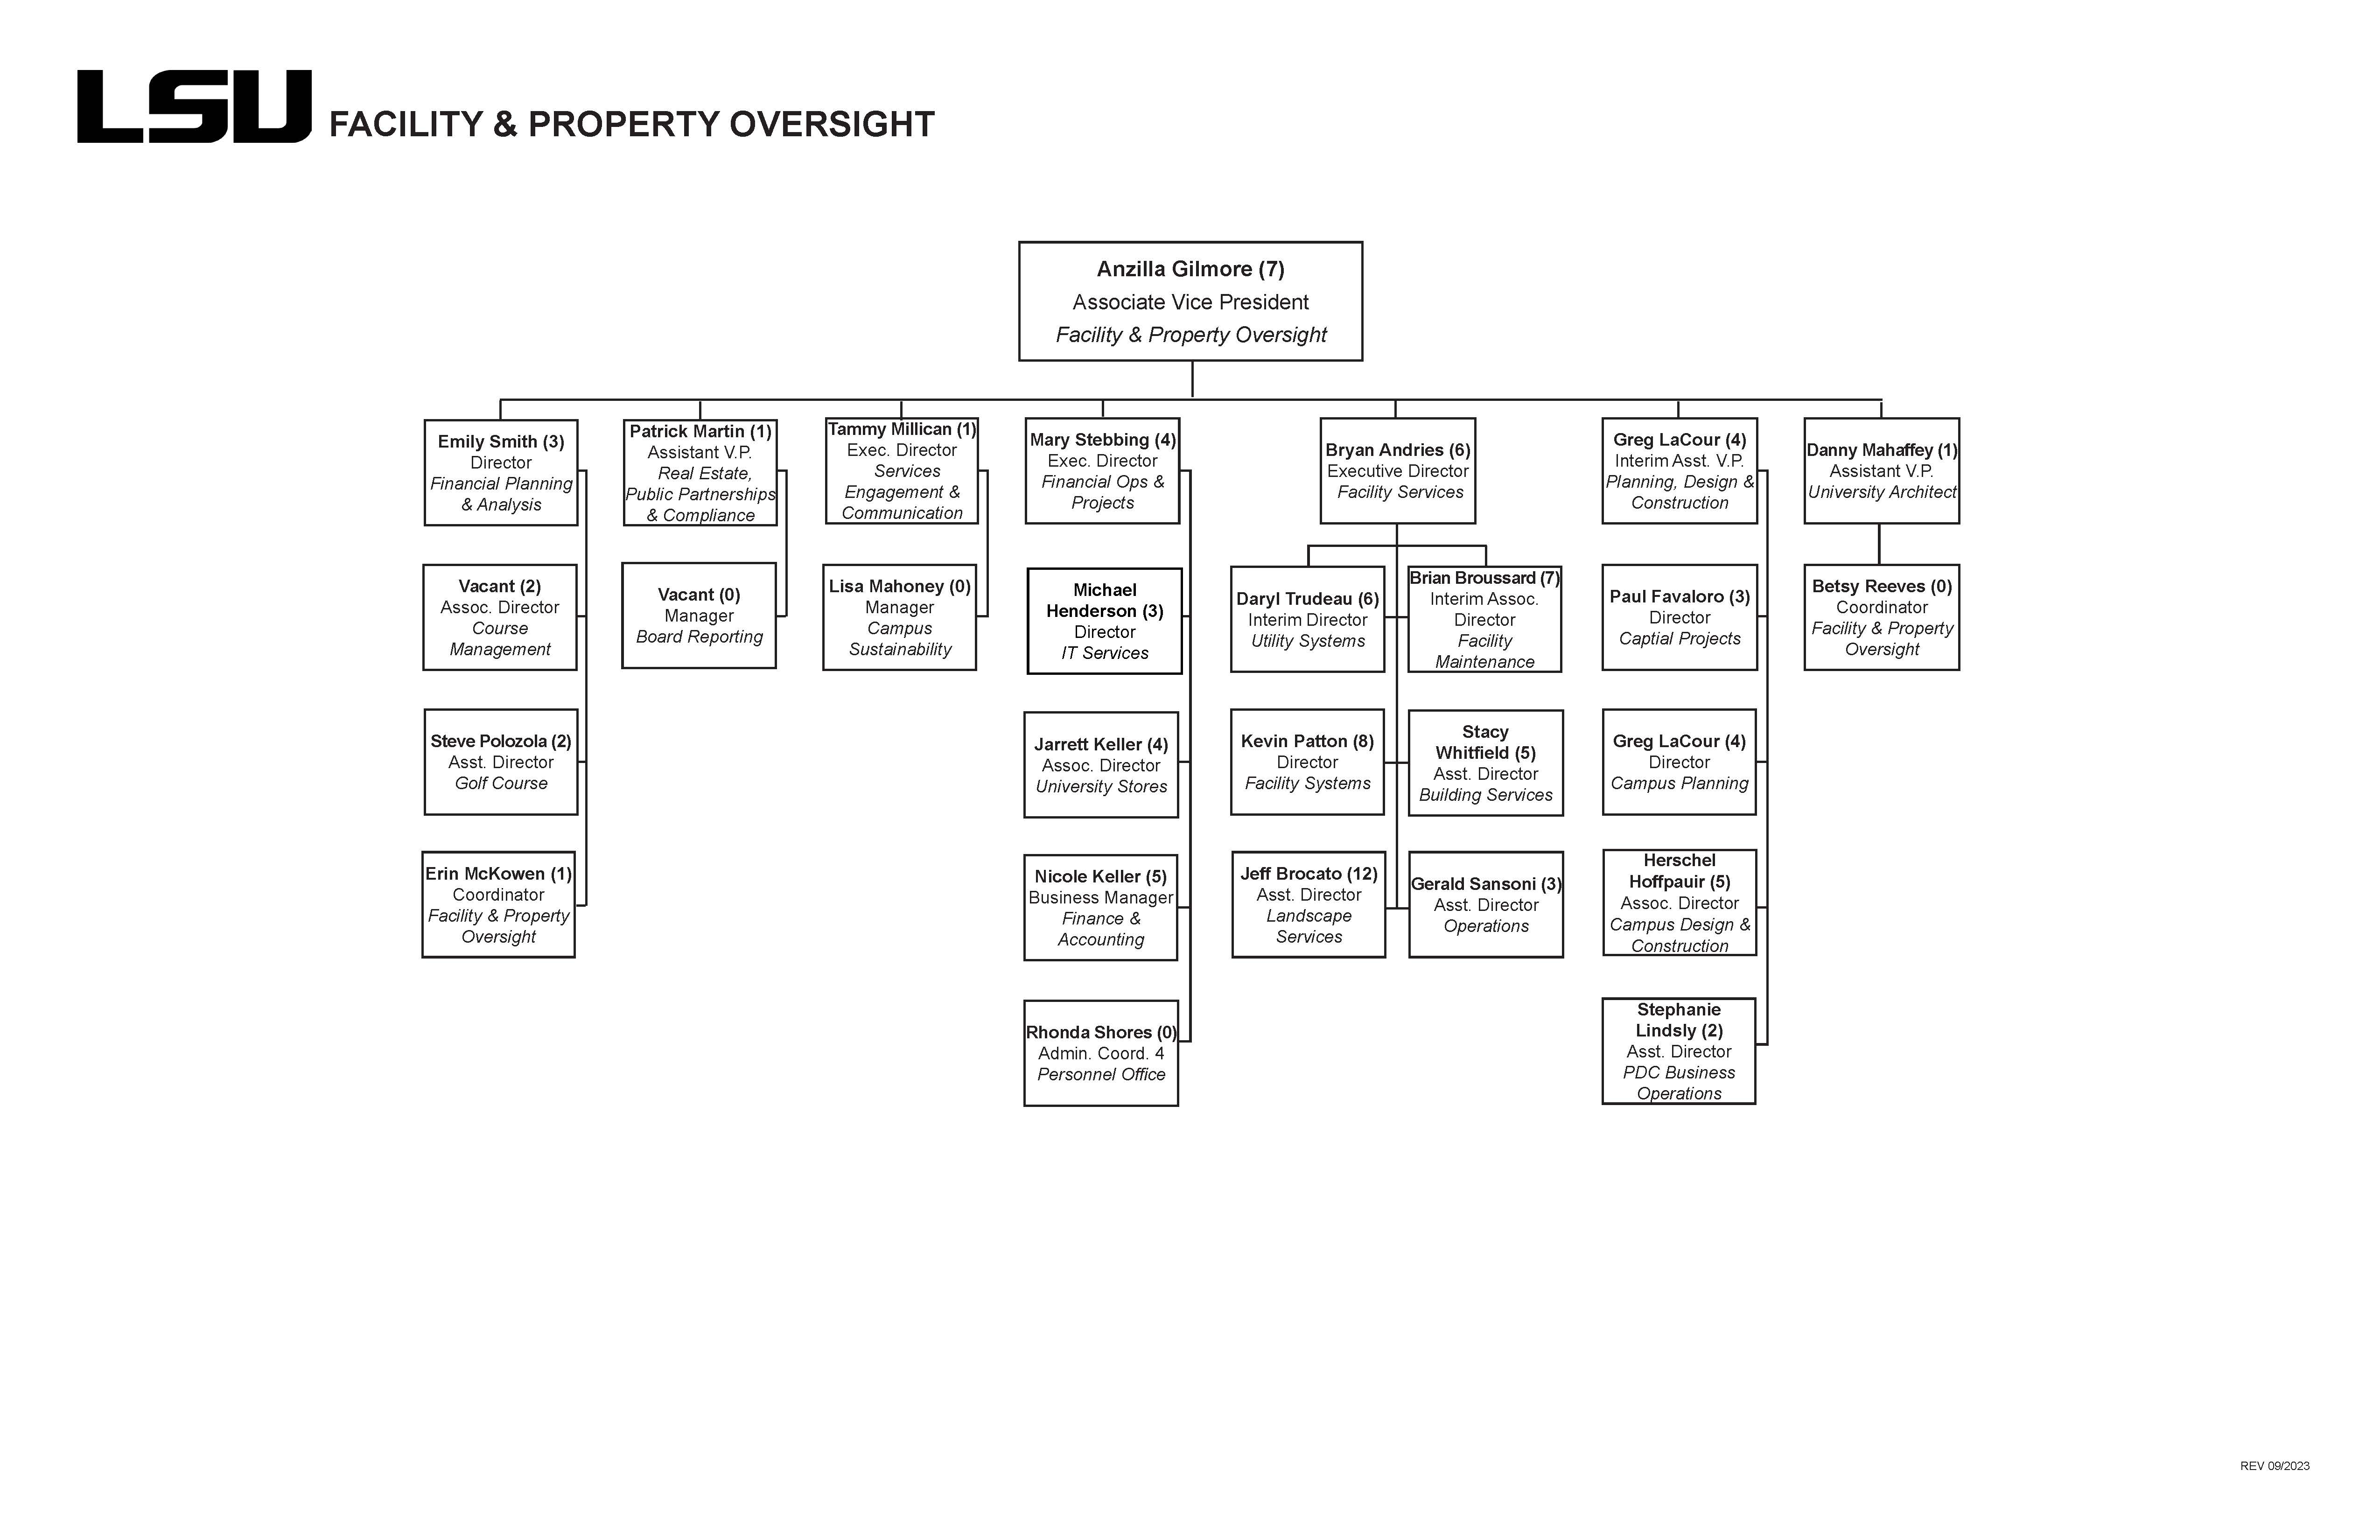 Facility & Property Oversight Organizational Chart